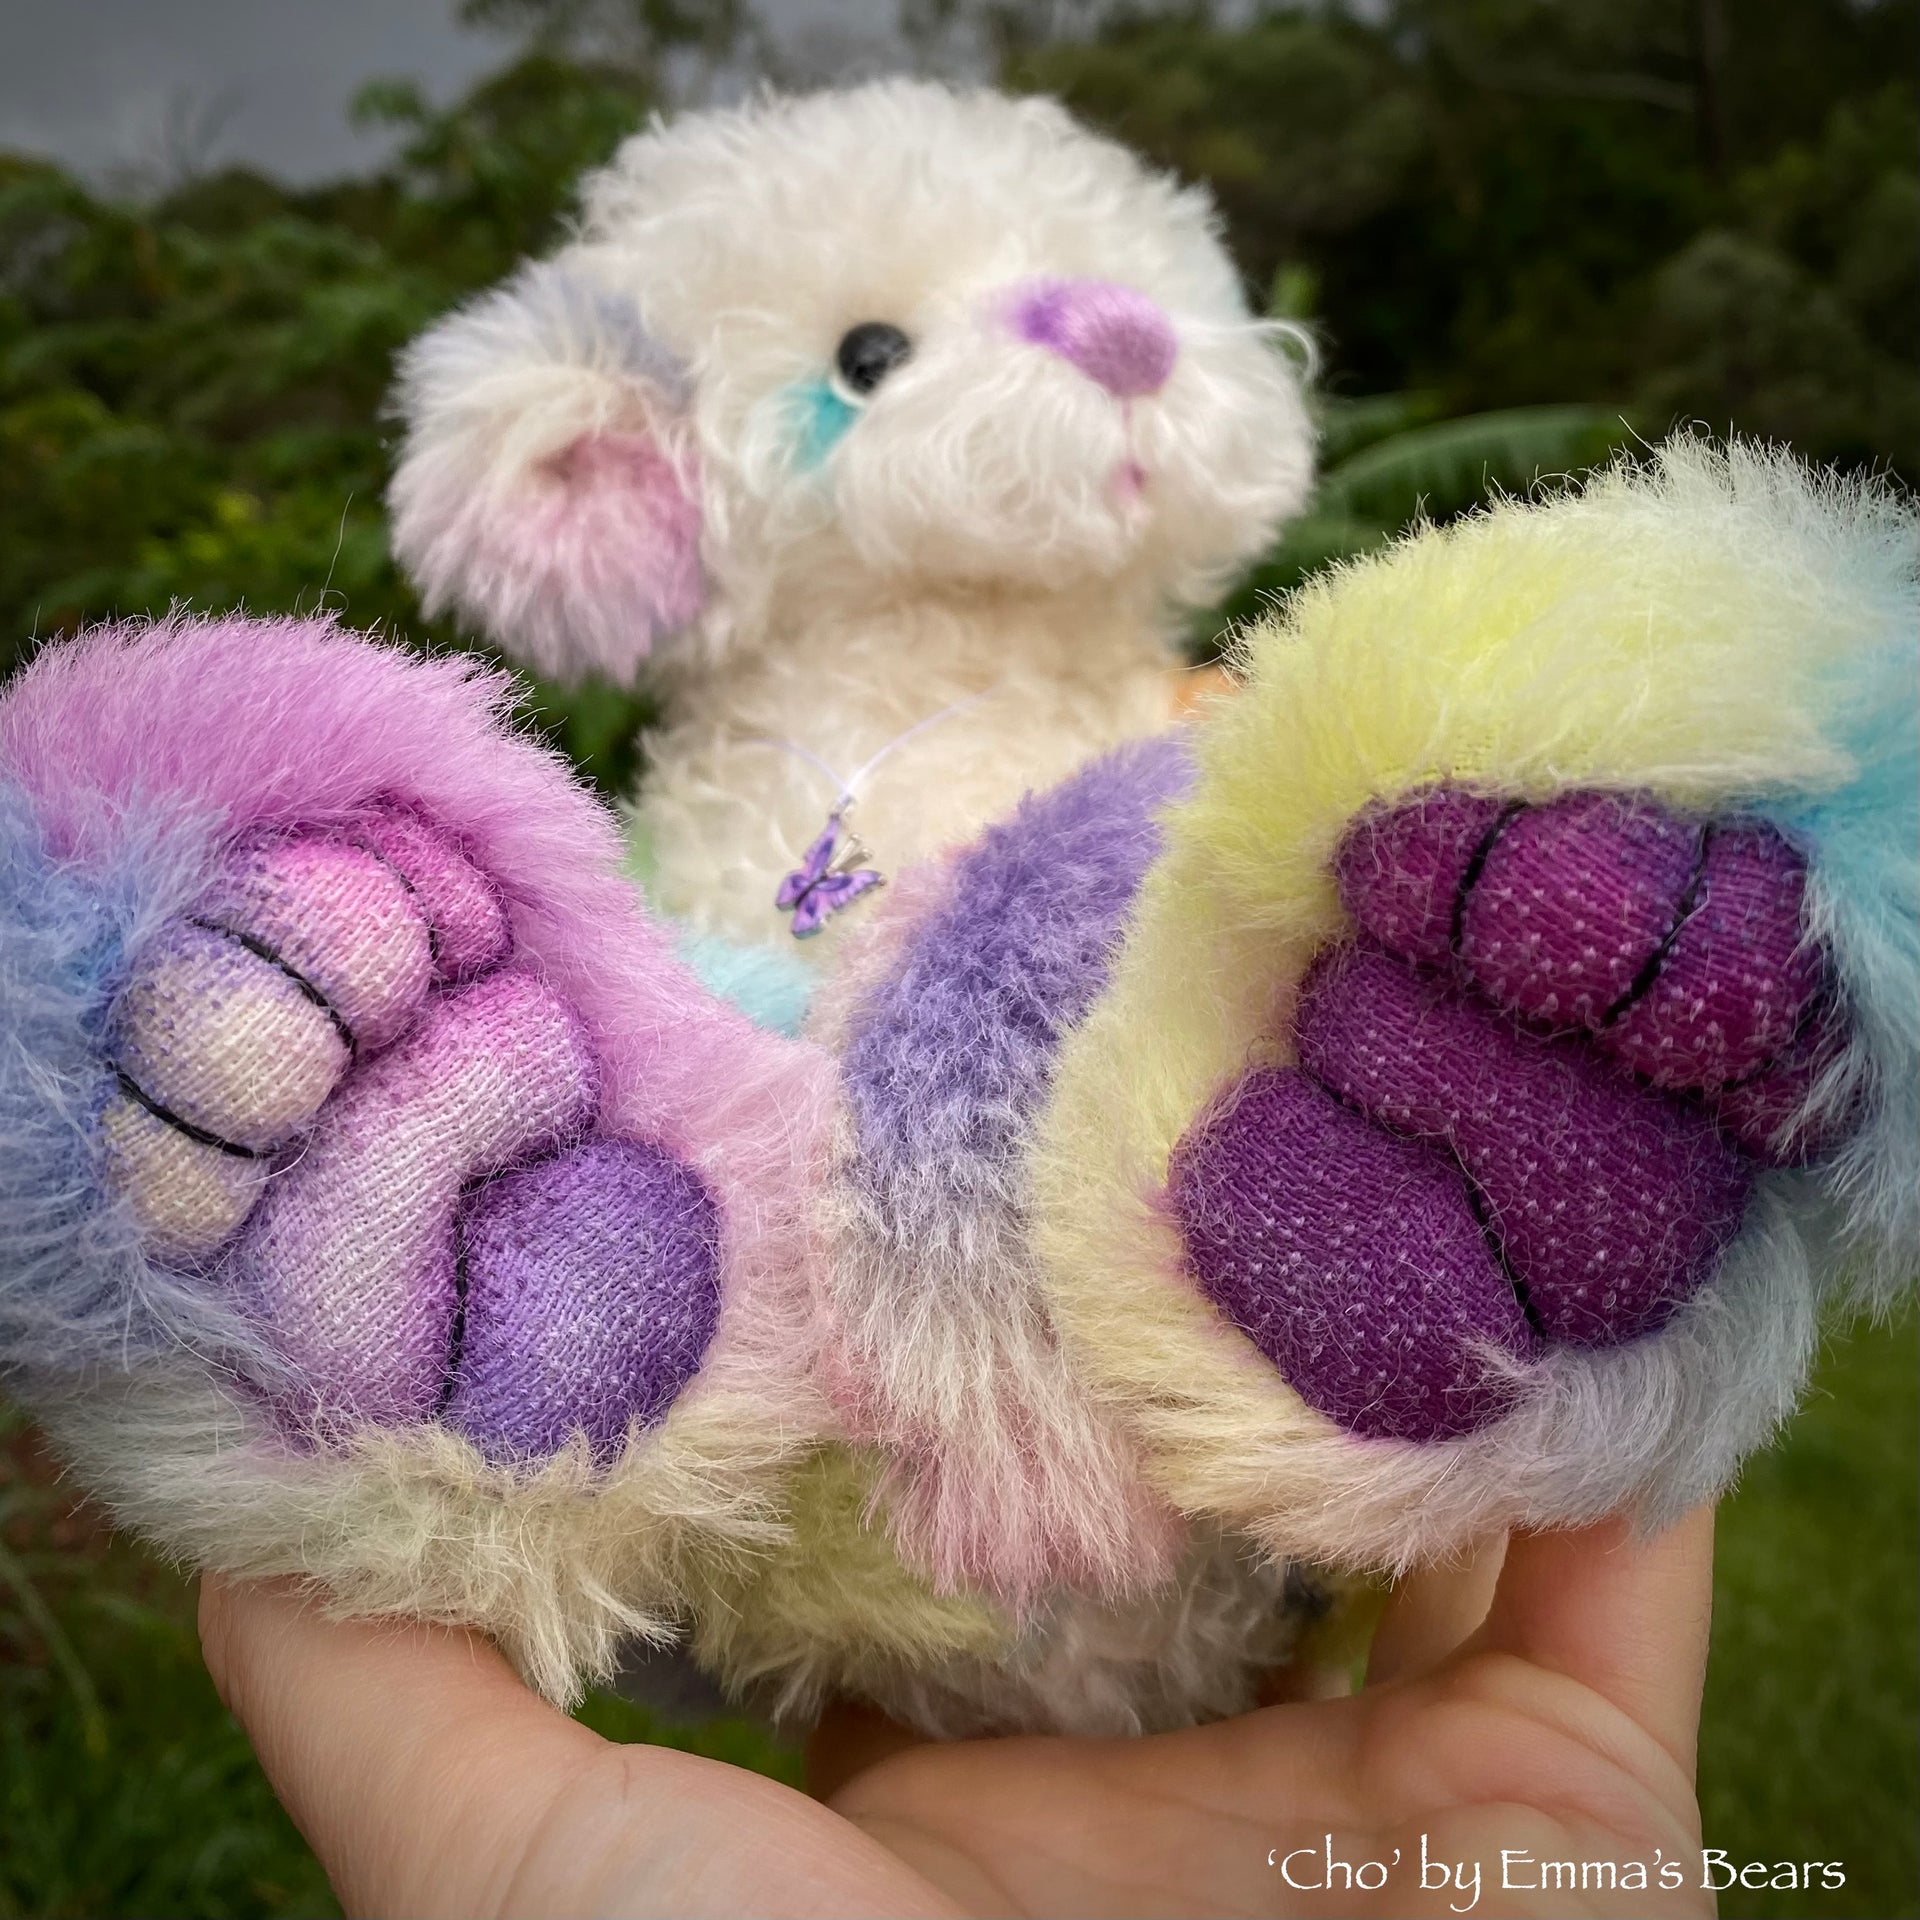 Cho - 12" Hand Dyed Rainbow Alpaca and Mohair Artist Bear by Emma's Bears - OOAK